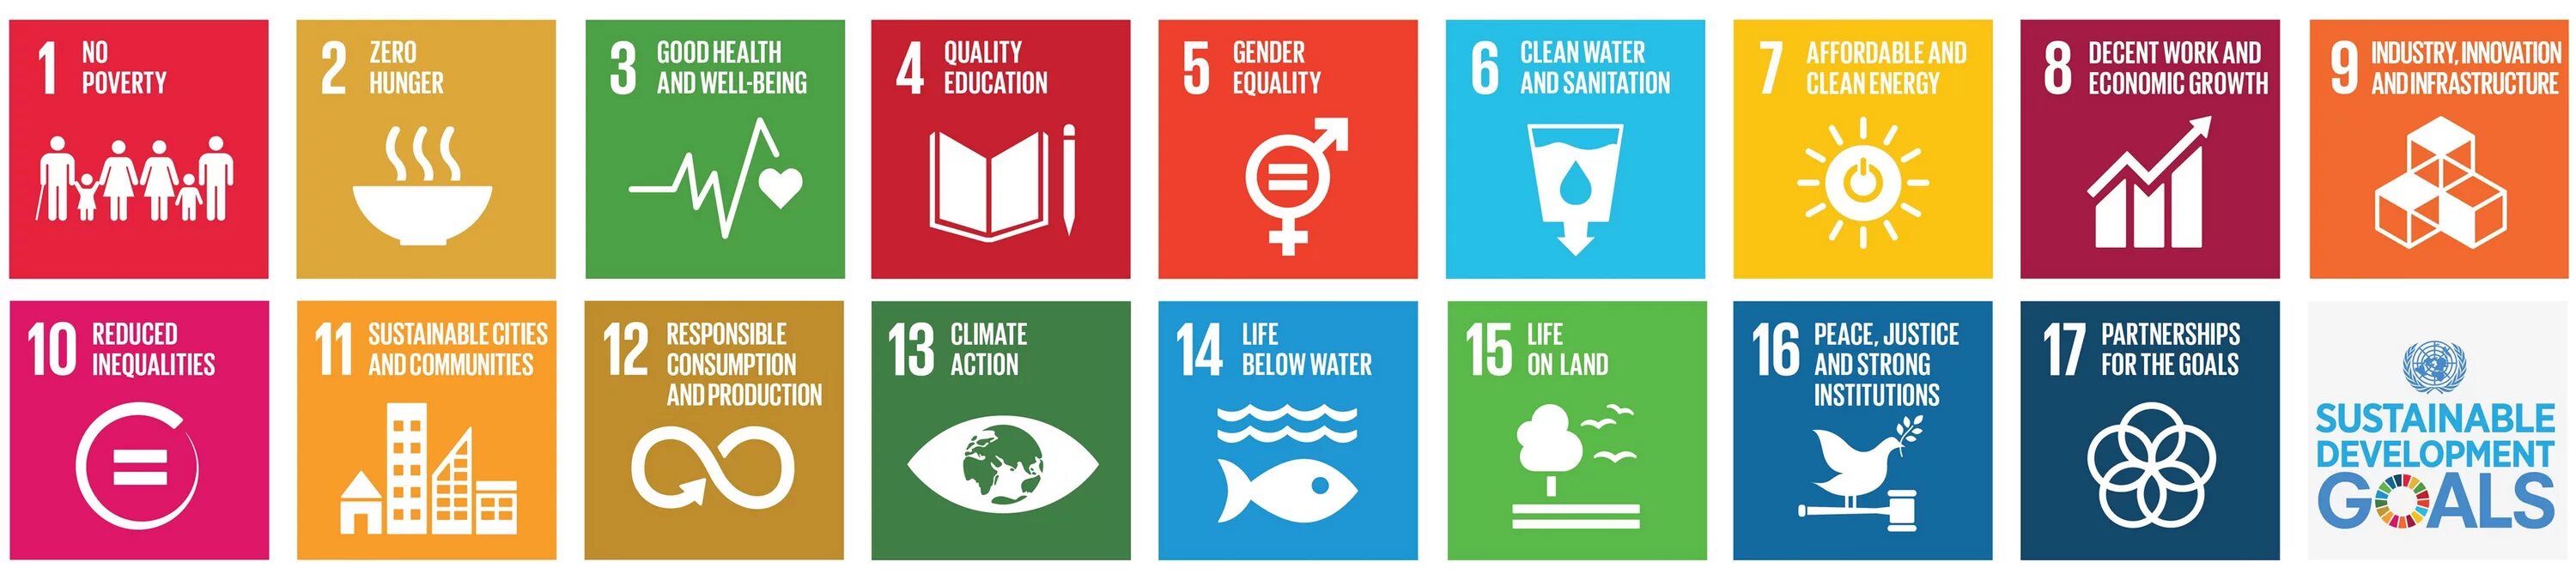 Цели оон 2015. 17 Целей устойчивого развития ООН. ЦУР ООН. Цели устойчивого развития ООН. SDG цели устойчивого развития.